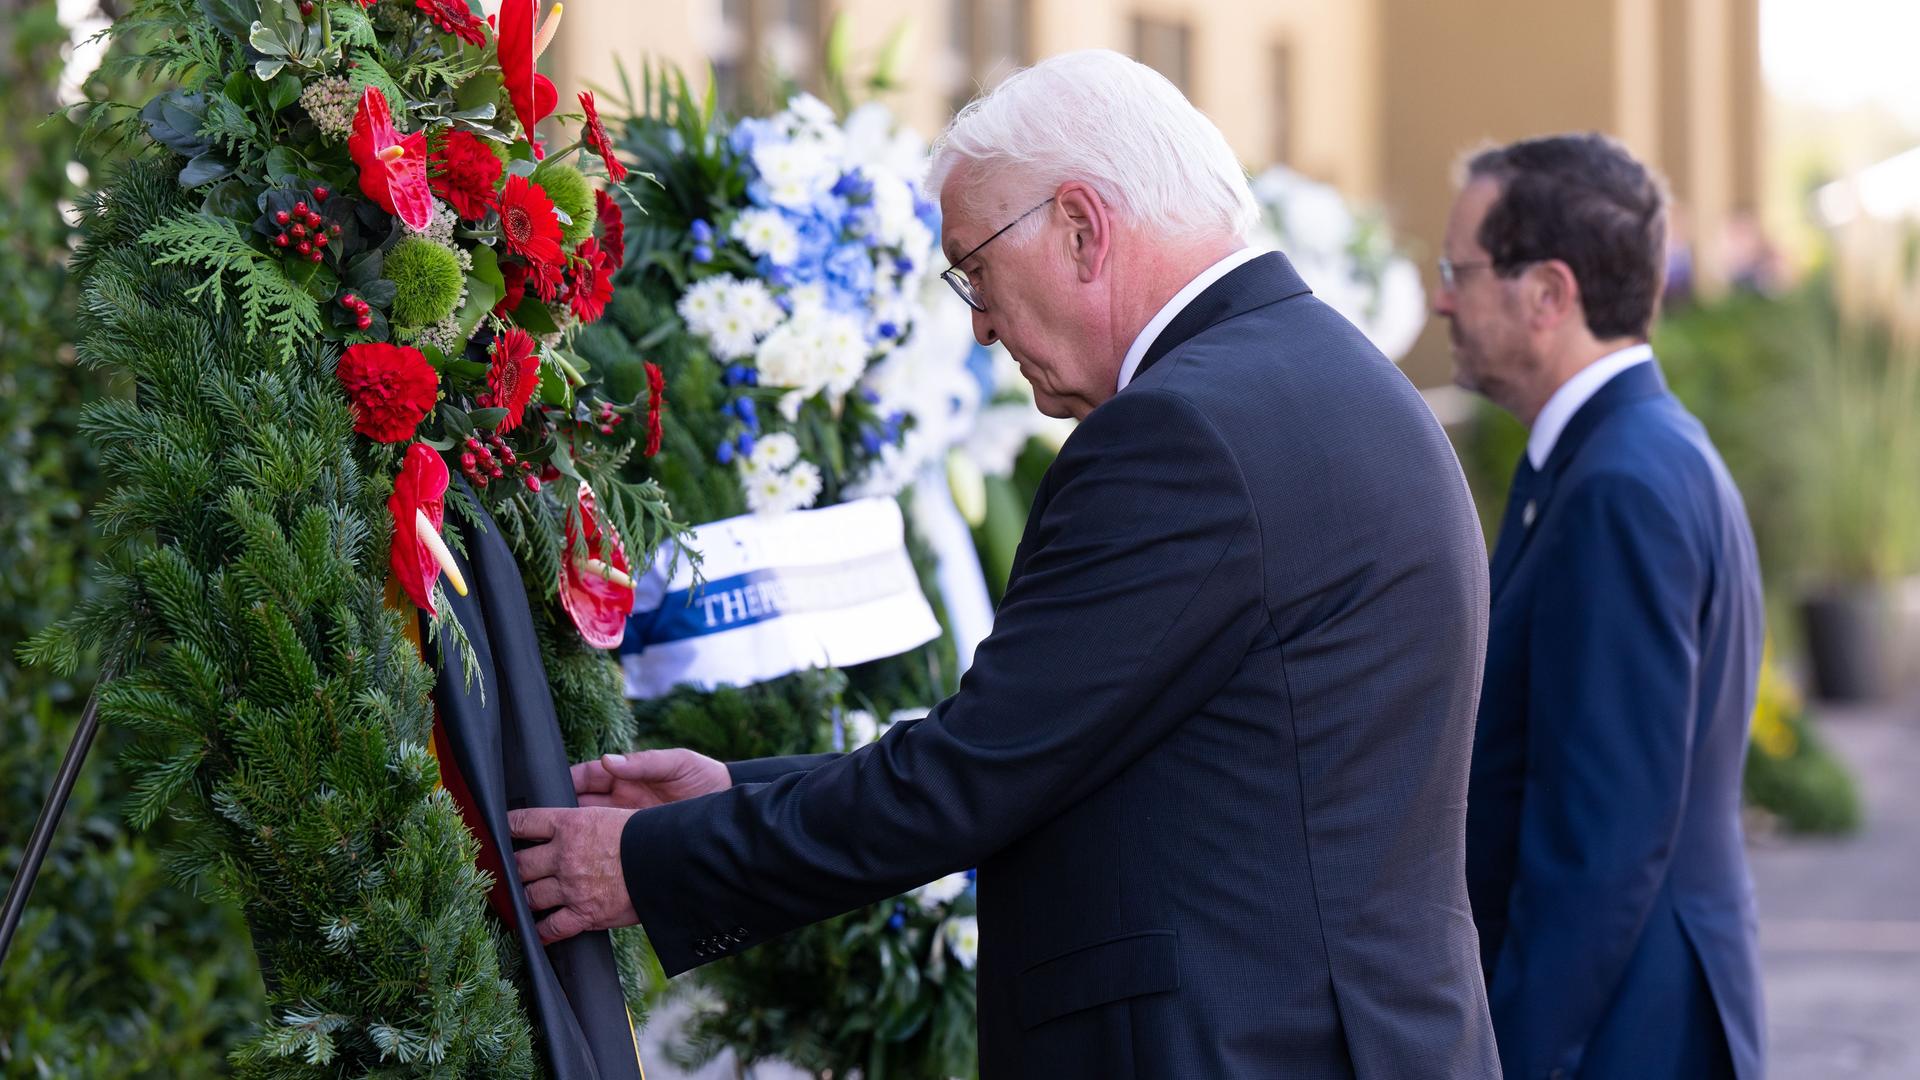 Bundes-Präsident Steinmeier und der israelische Staats-Chef Herzog stehen mit gesenktem kopf vor Blumen-Kränzen.